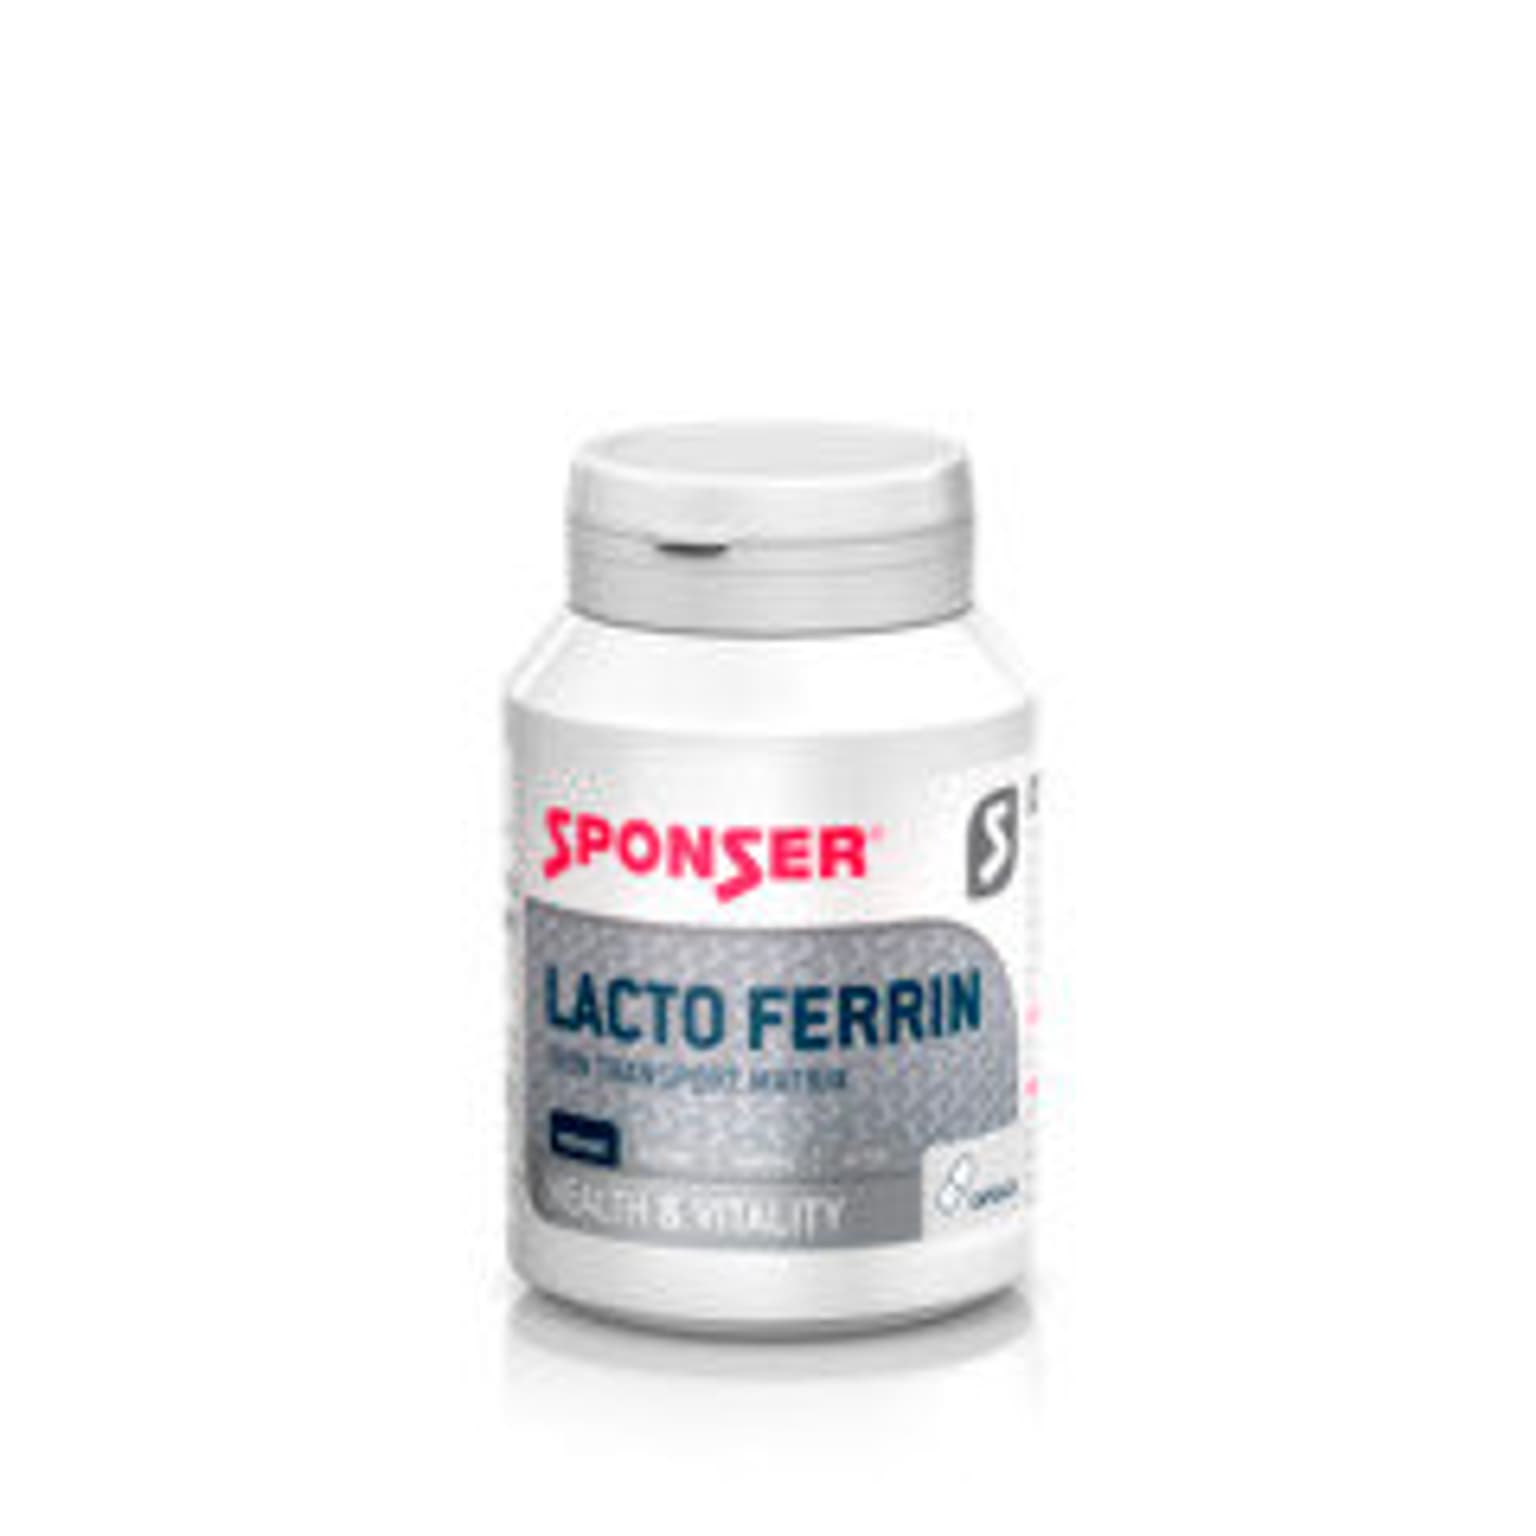 Sponser Sponser Lactoferrin Integratore alimentare 1